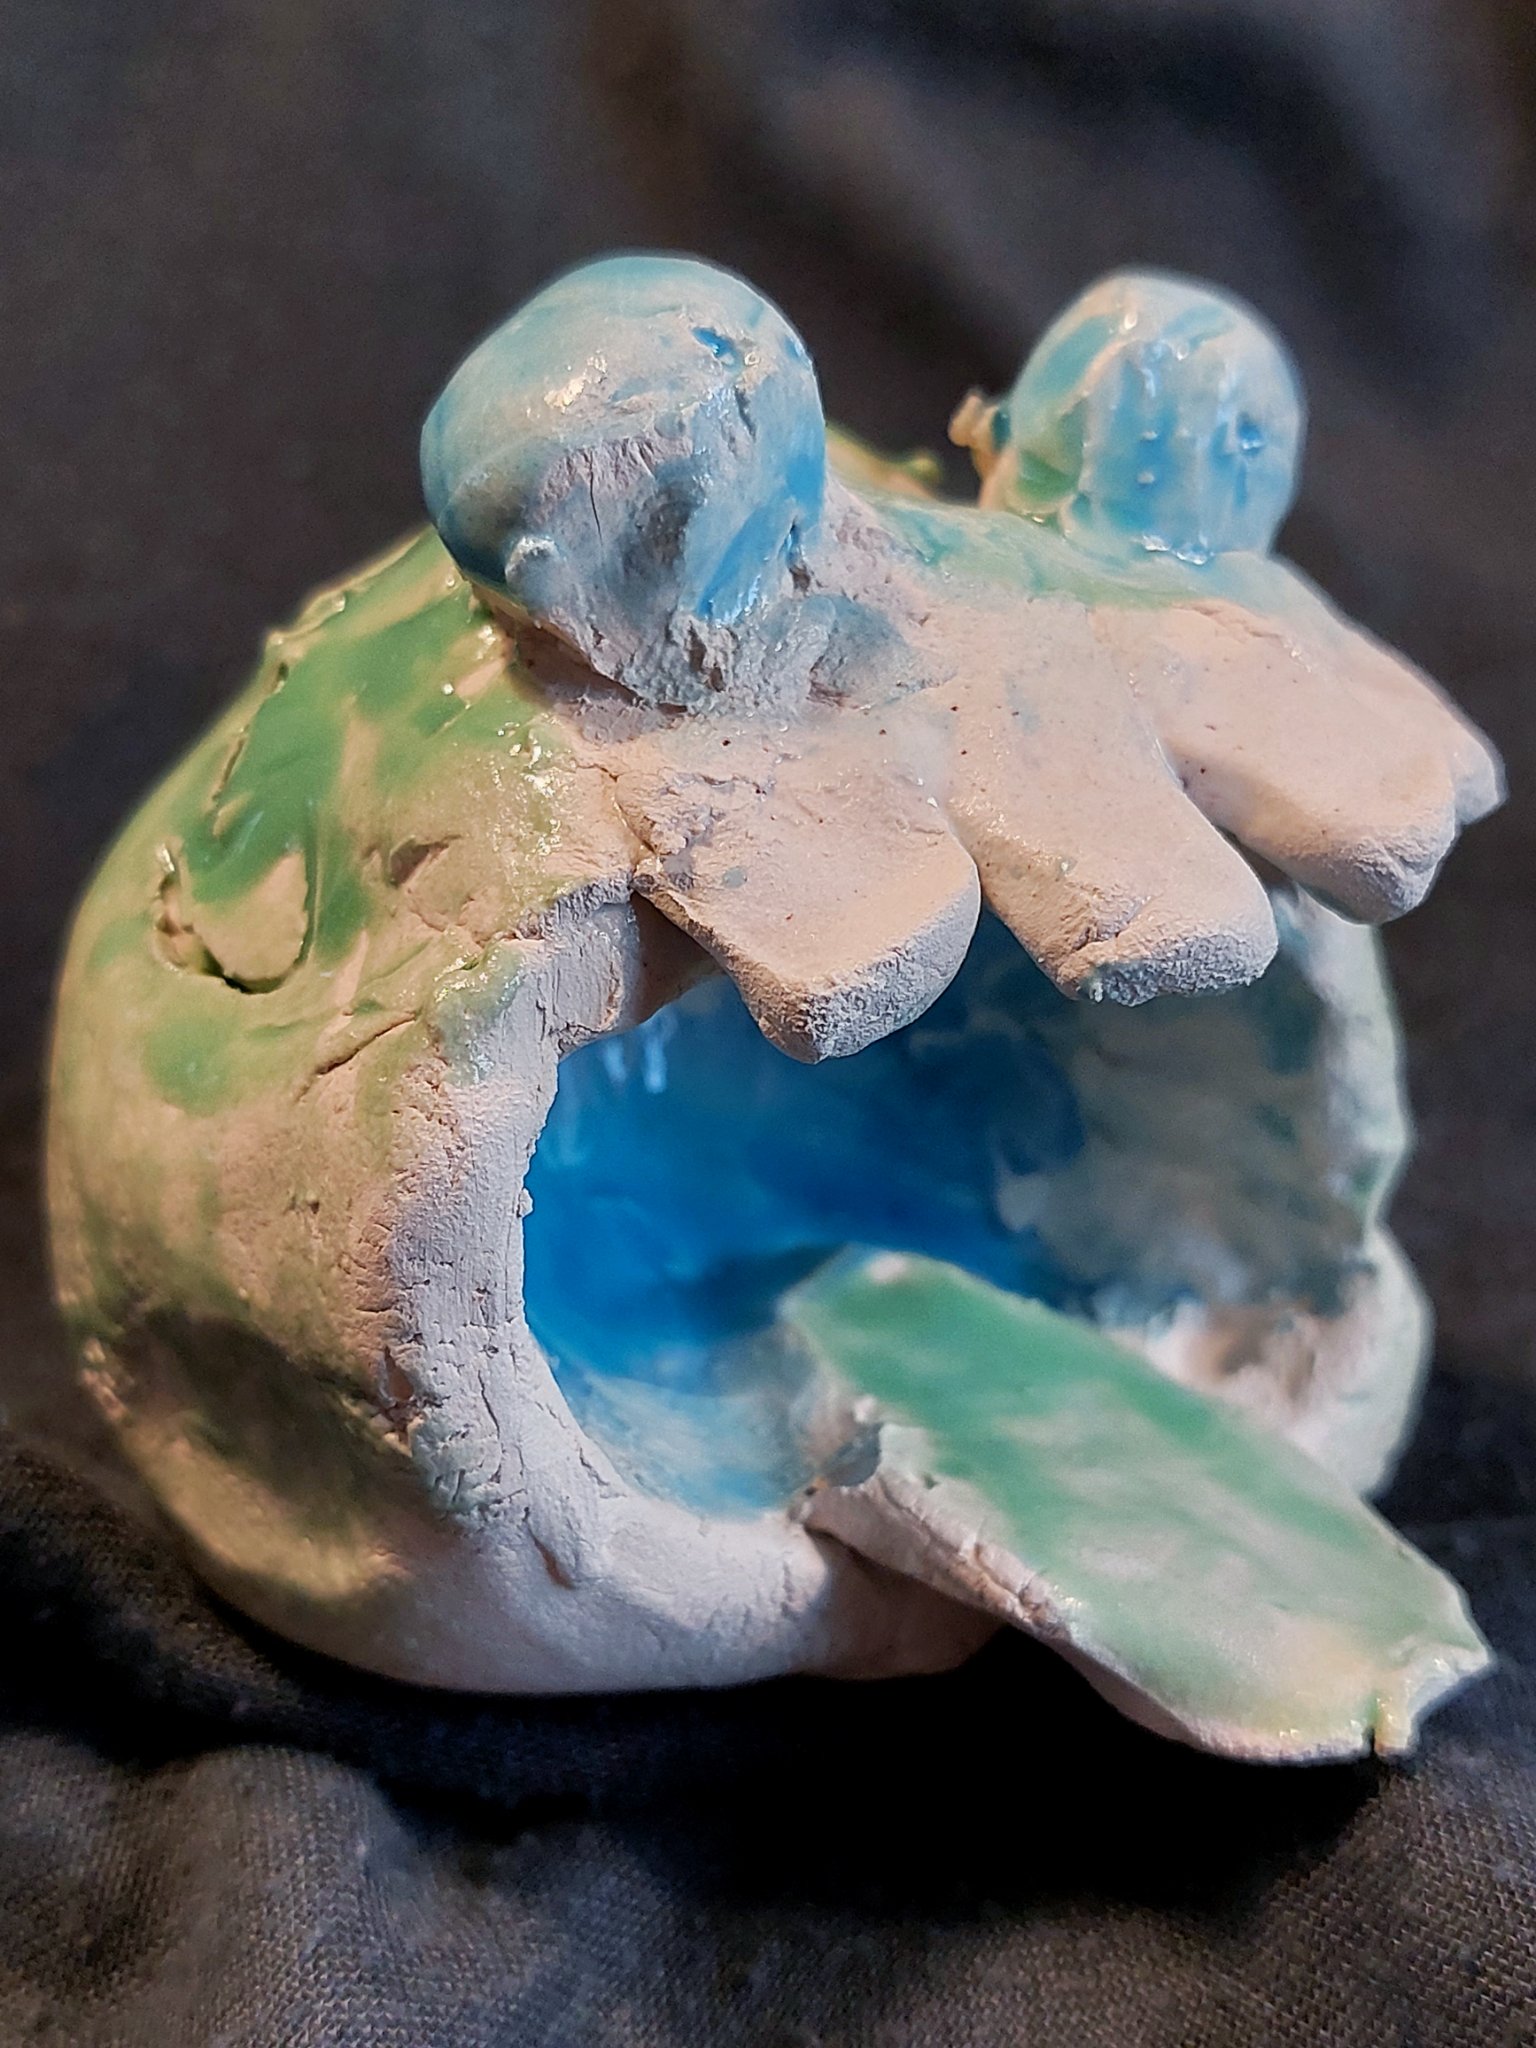 Et keramisk værk fremstillet af et barn forestillende hovedet af et lille, grønt keramikmonster.